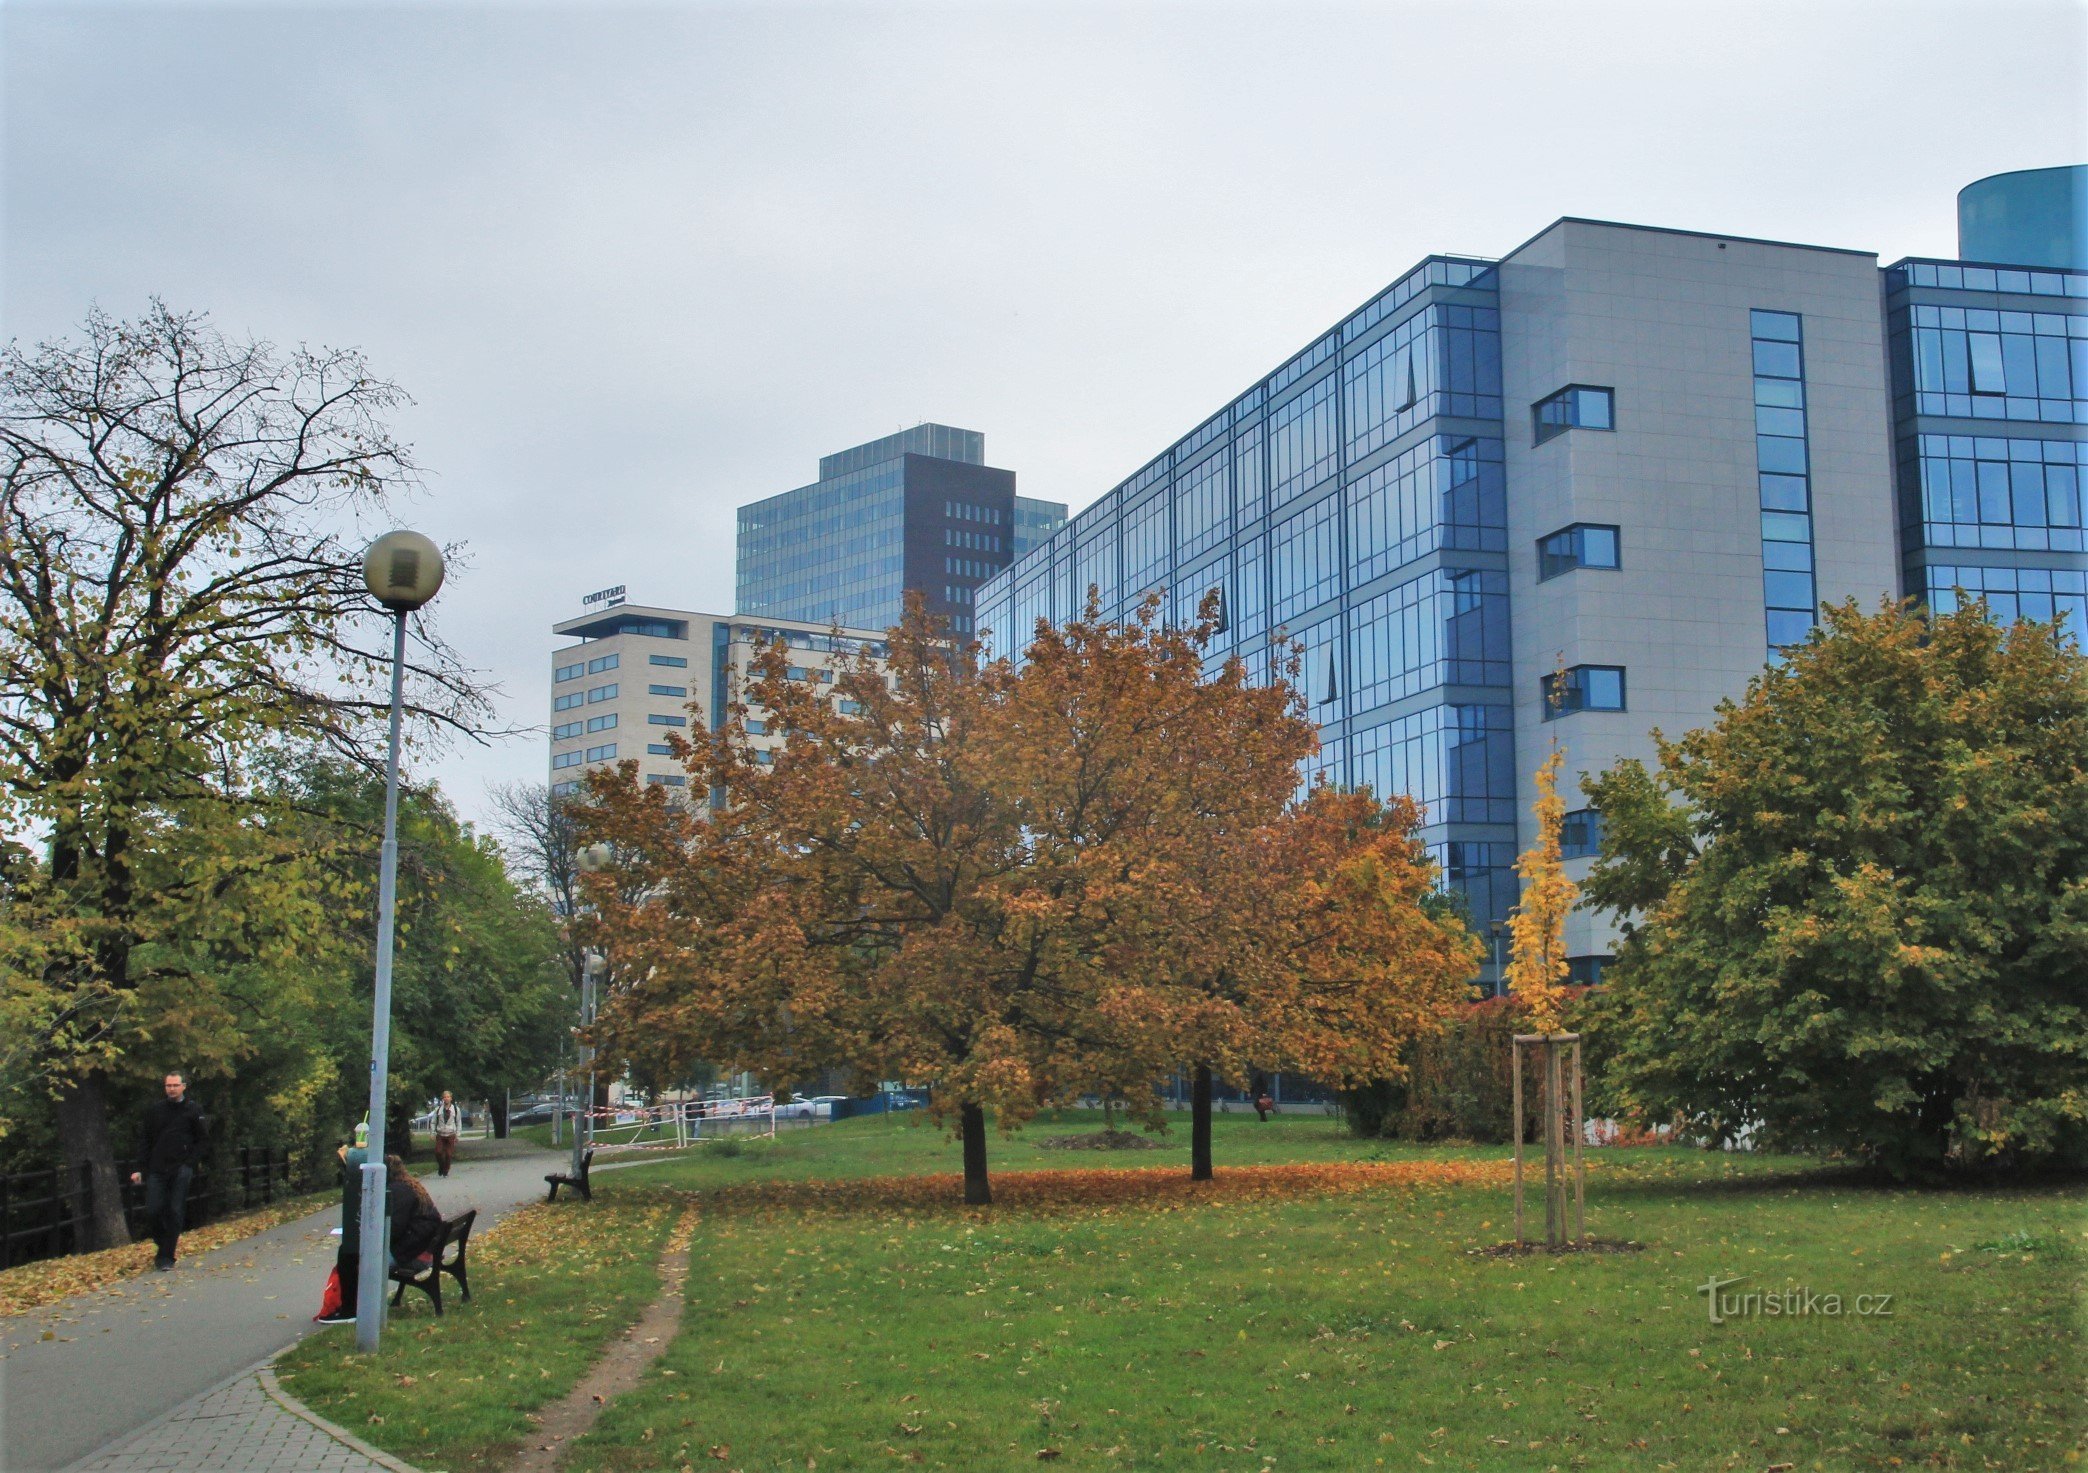 Vedere a complexului de clădiri cu hotelul din strada Renneská